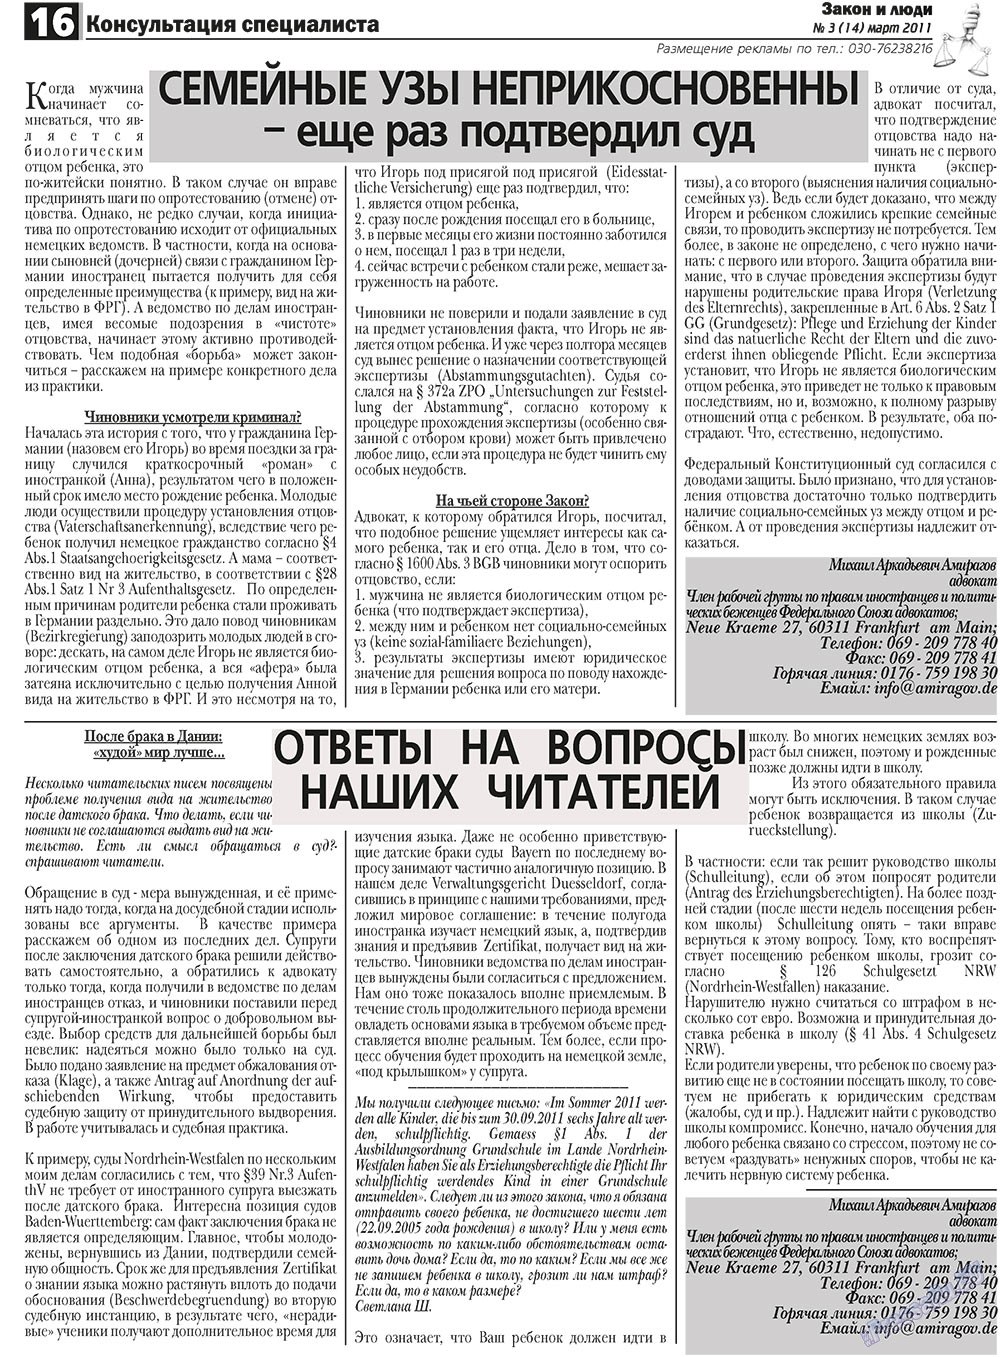 Закон и люди, газета. 2011 №3 стр.16